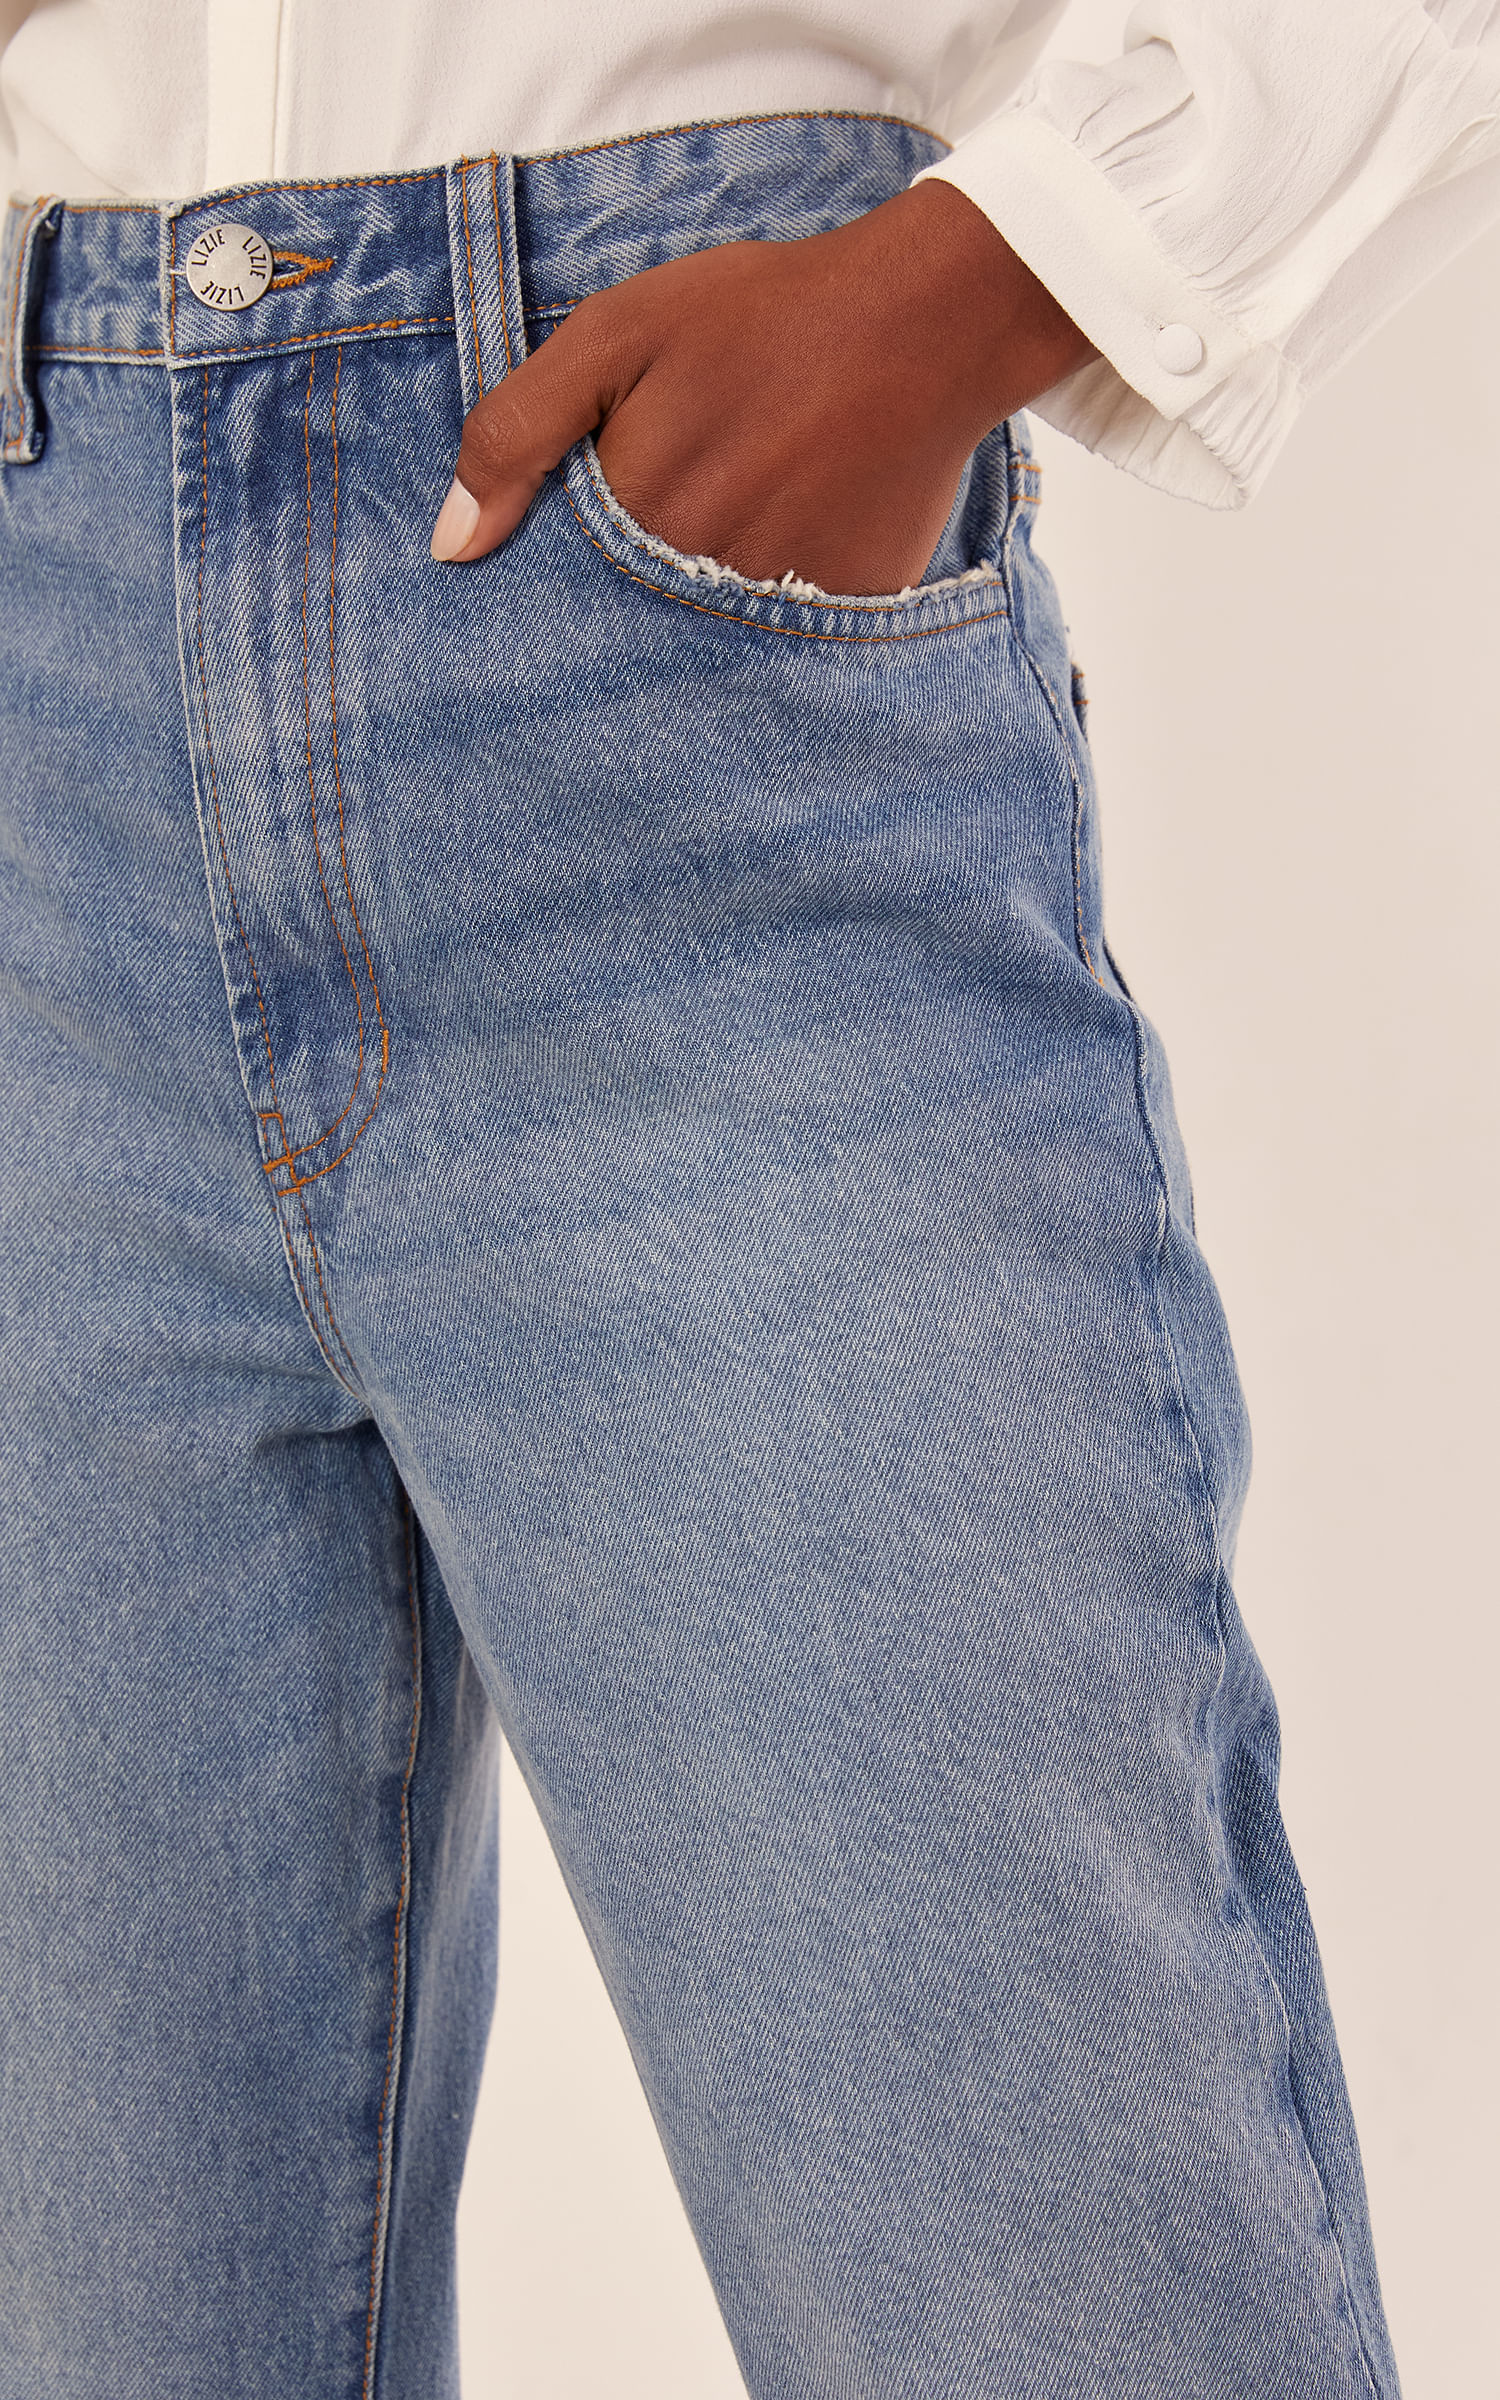 Como usar Calça Jeans Reta?, Dicas pra você não errar